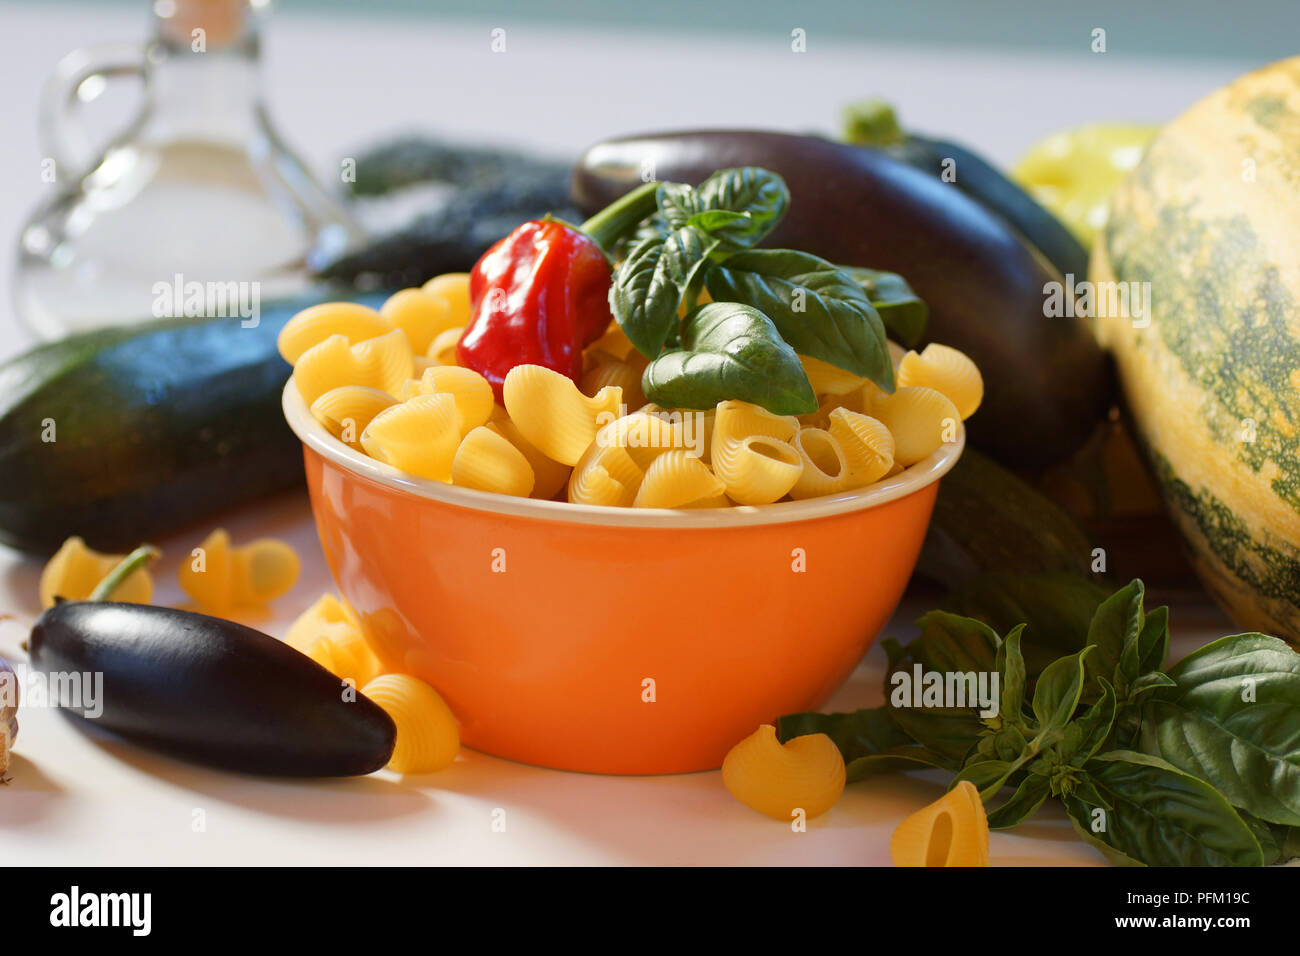 Die Zutaten für die Zubereitung von italienischen Pasta. Noch immer leben von Zucchini, patisson, Aubergine, Paprika, Knoblauch und Pasta. Stockfoto